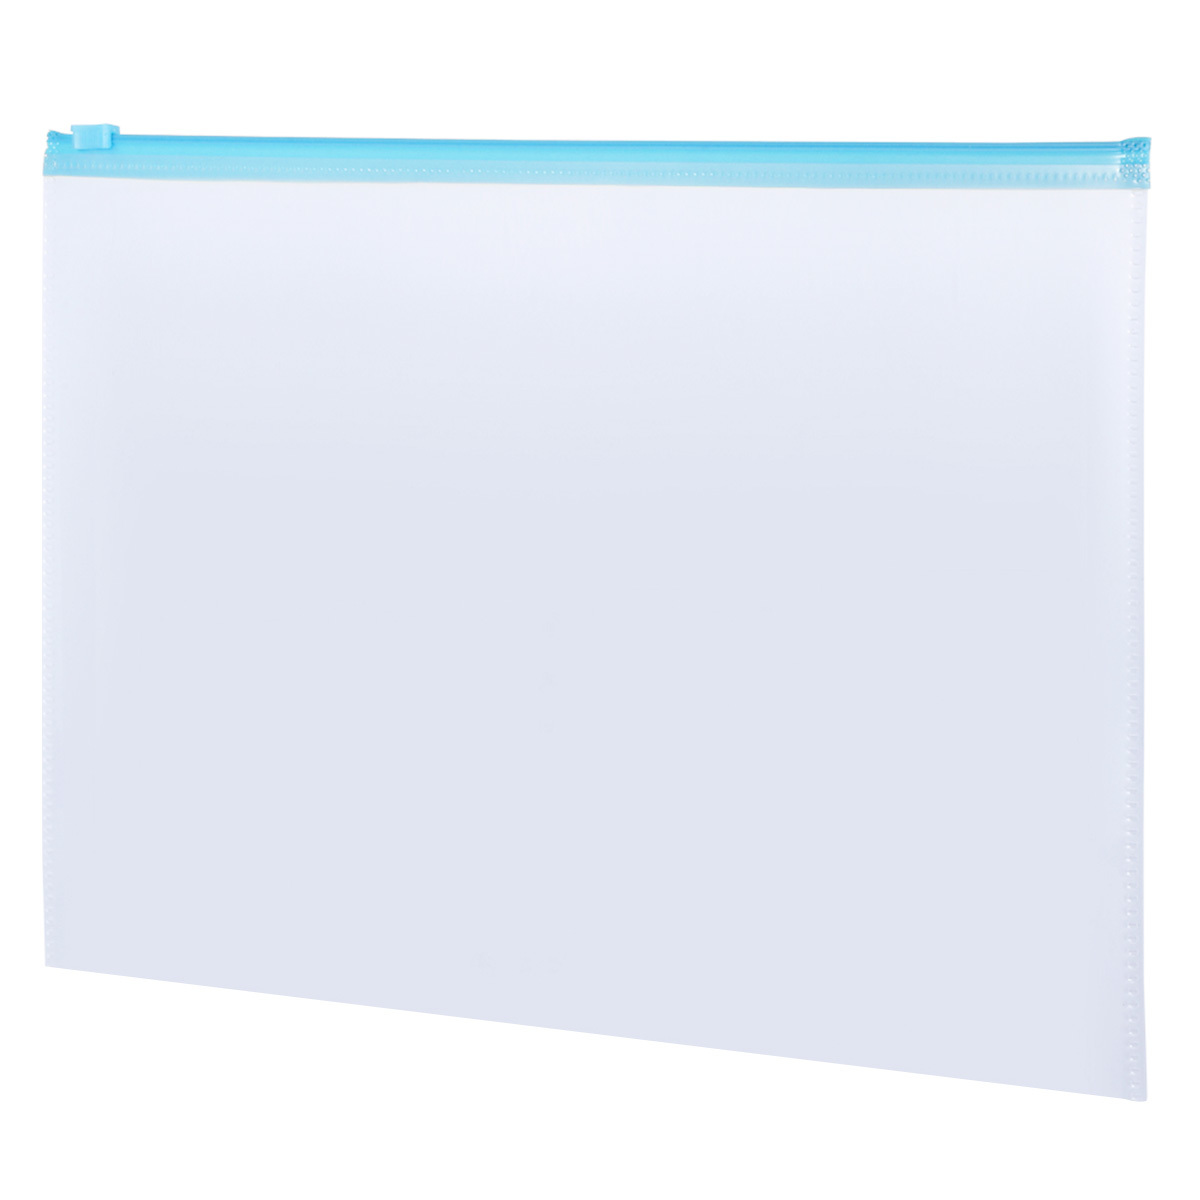 Sobre de Plástico con Cierre Carta Office Depot / Transparente con Azul